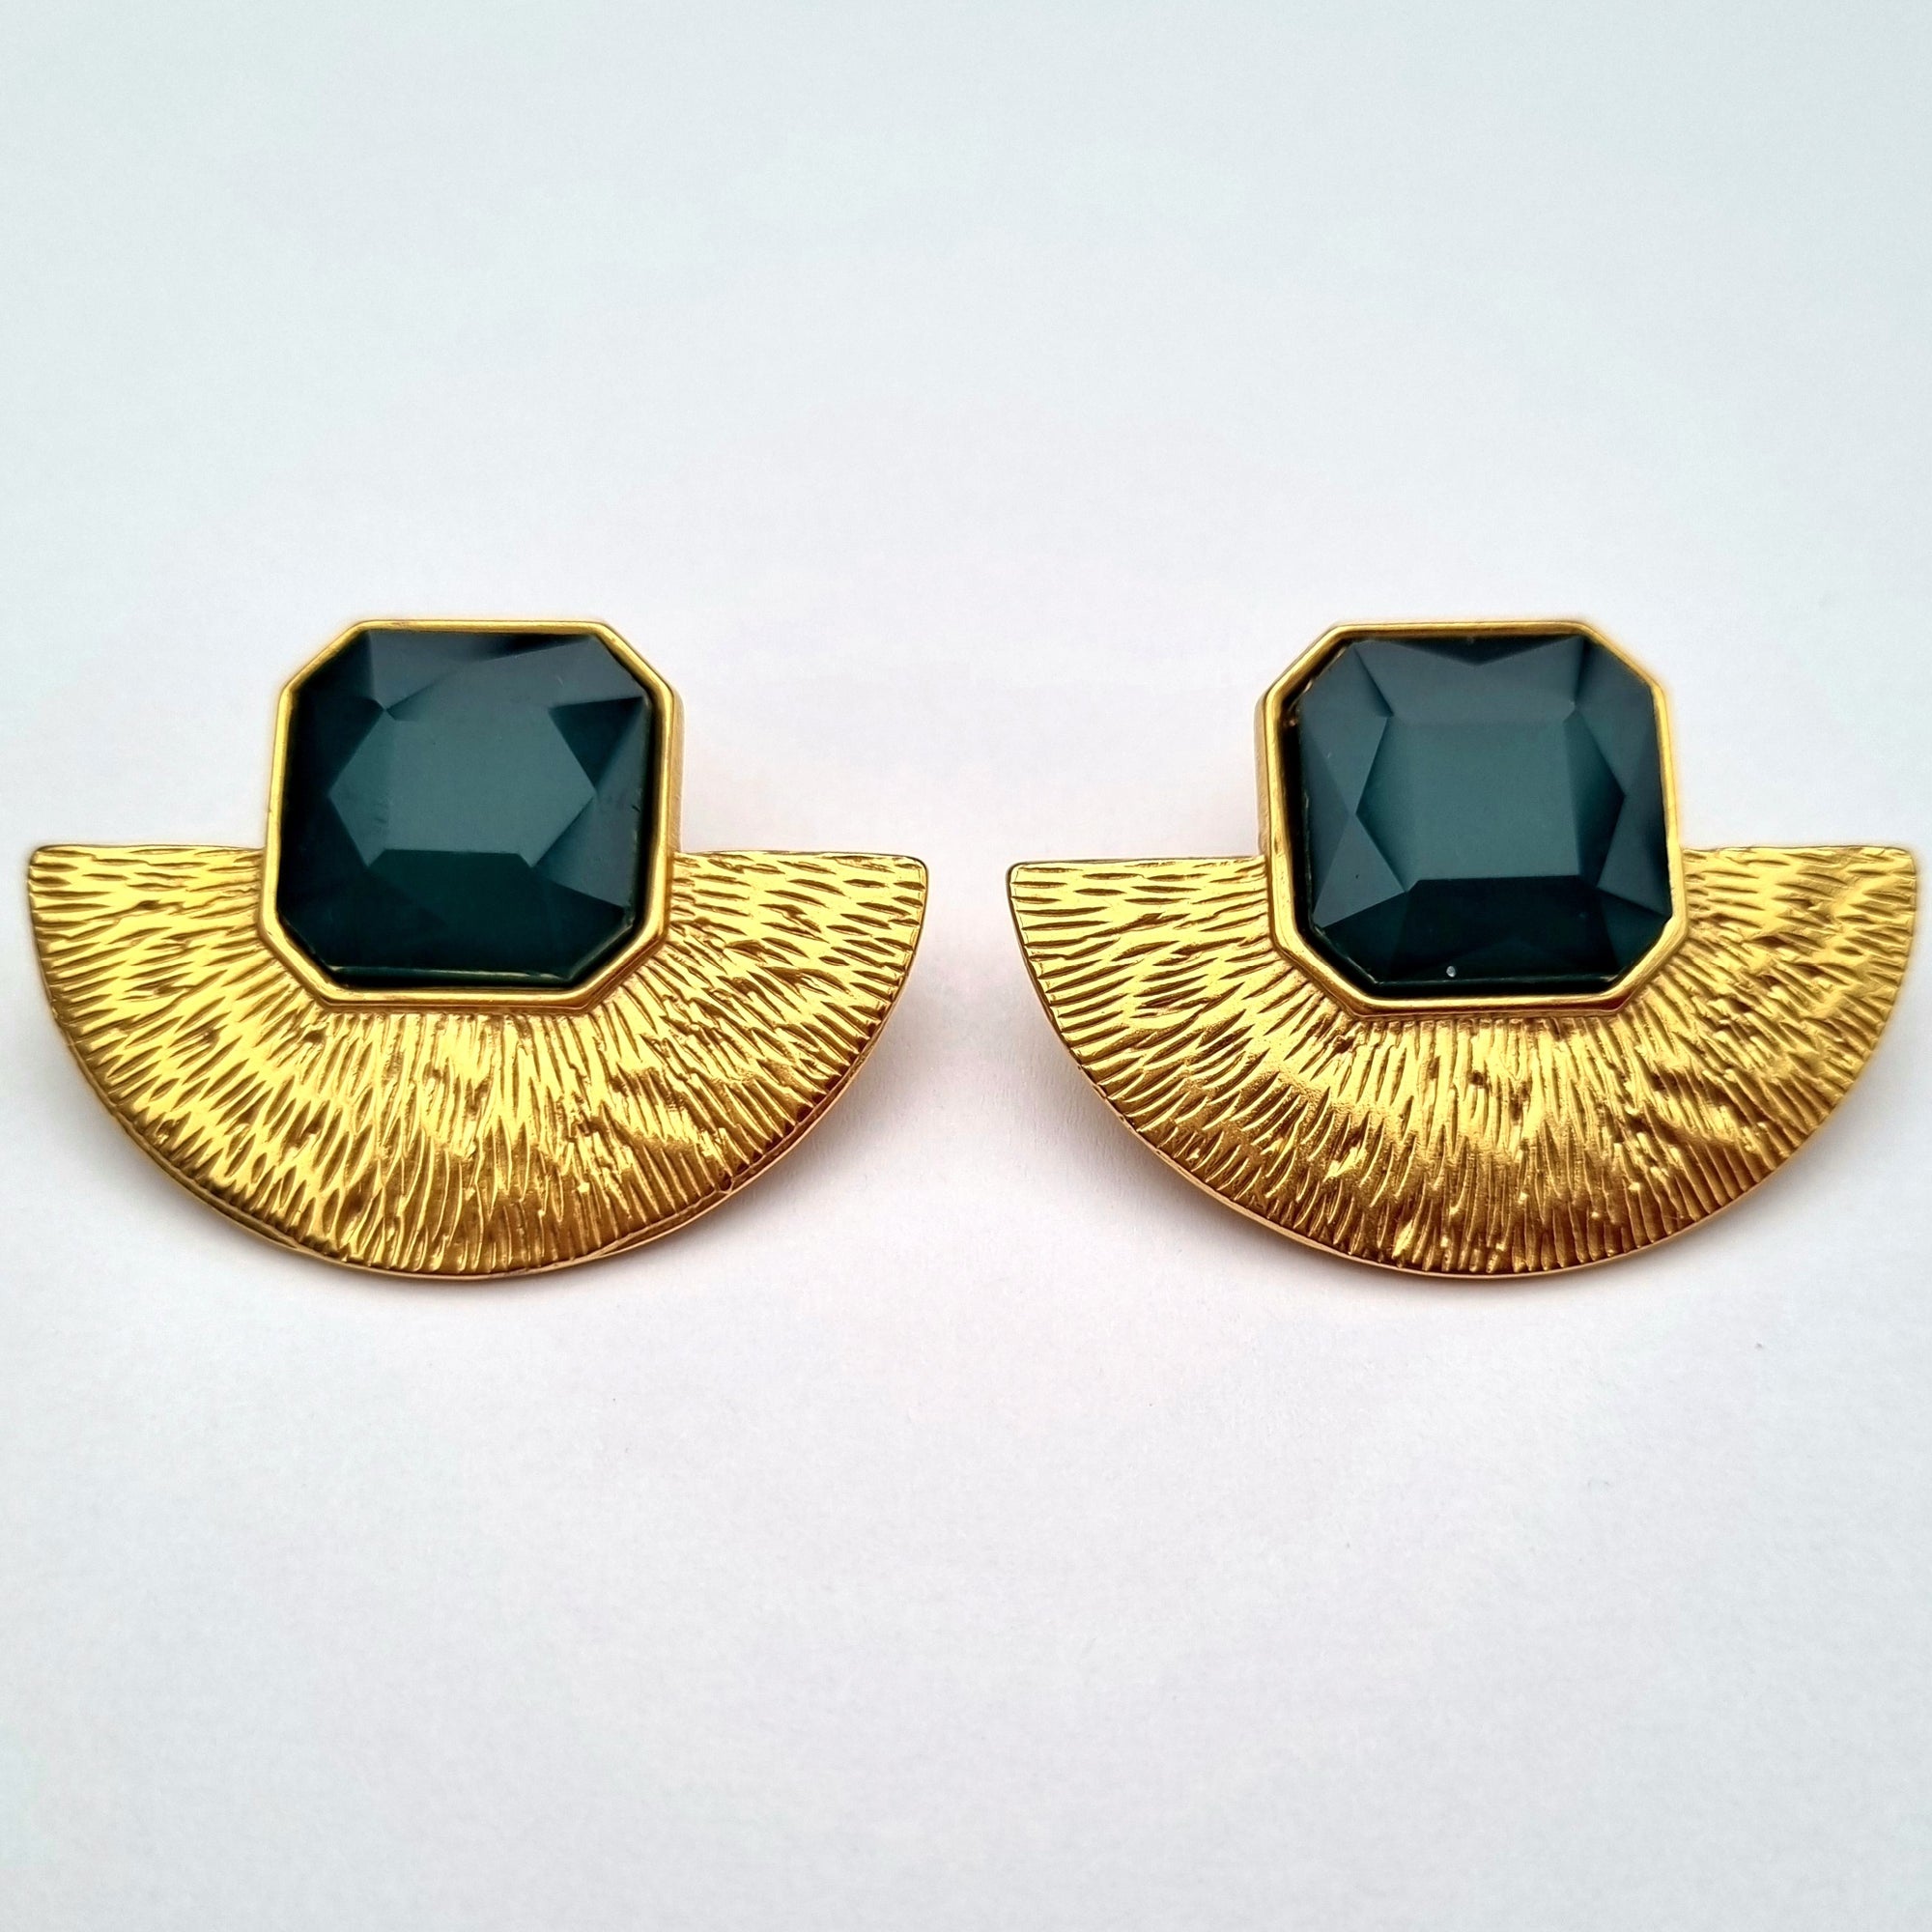 Edna green earrings